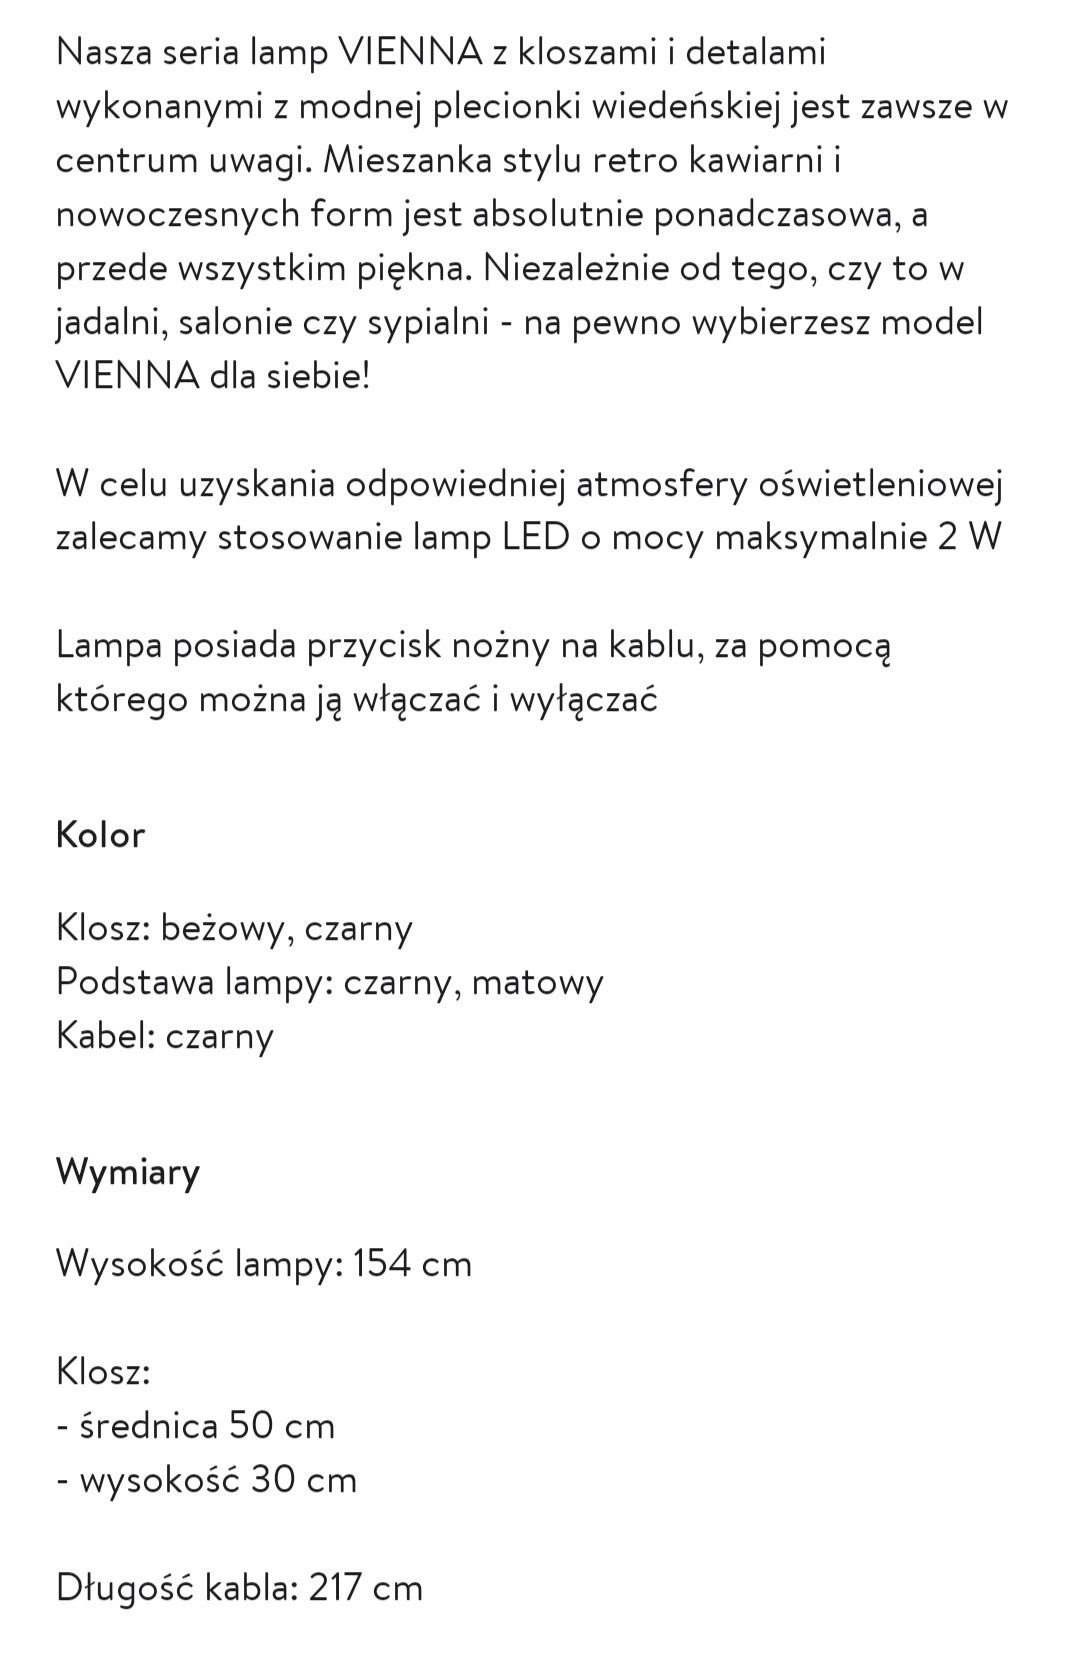 Nowa lampa Vienna Westwing 1079 -> 449 zł - 419 zł Nowa cena